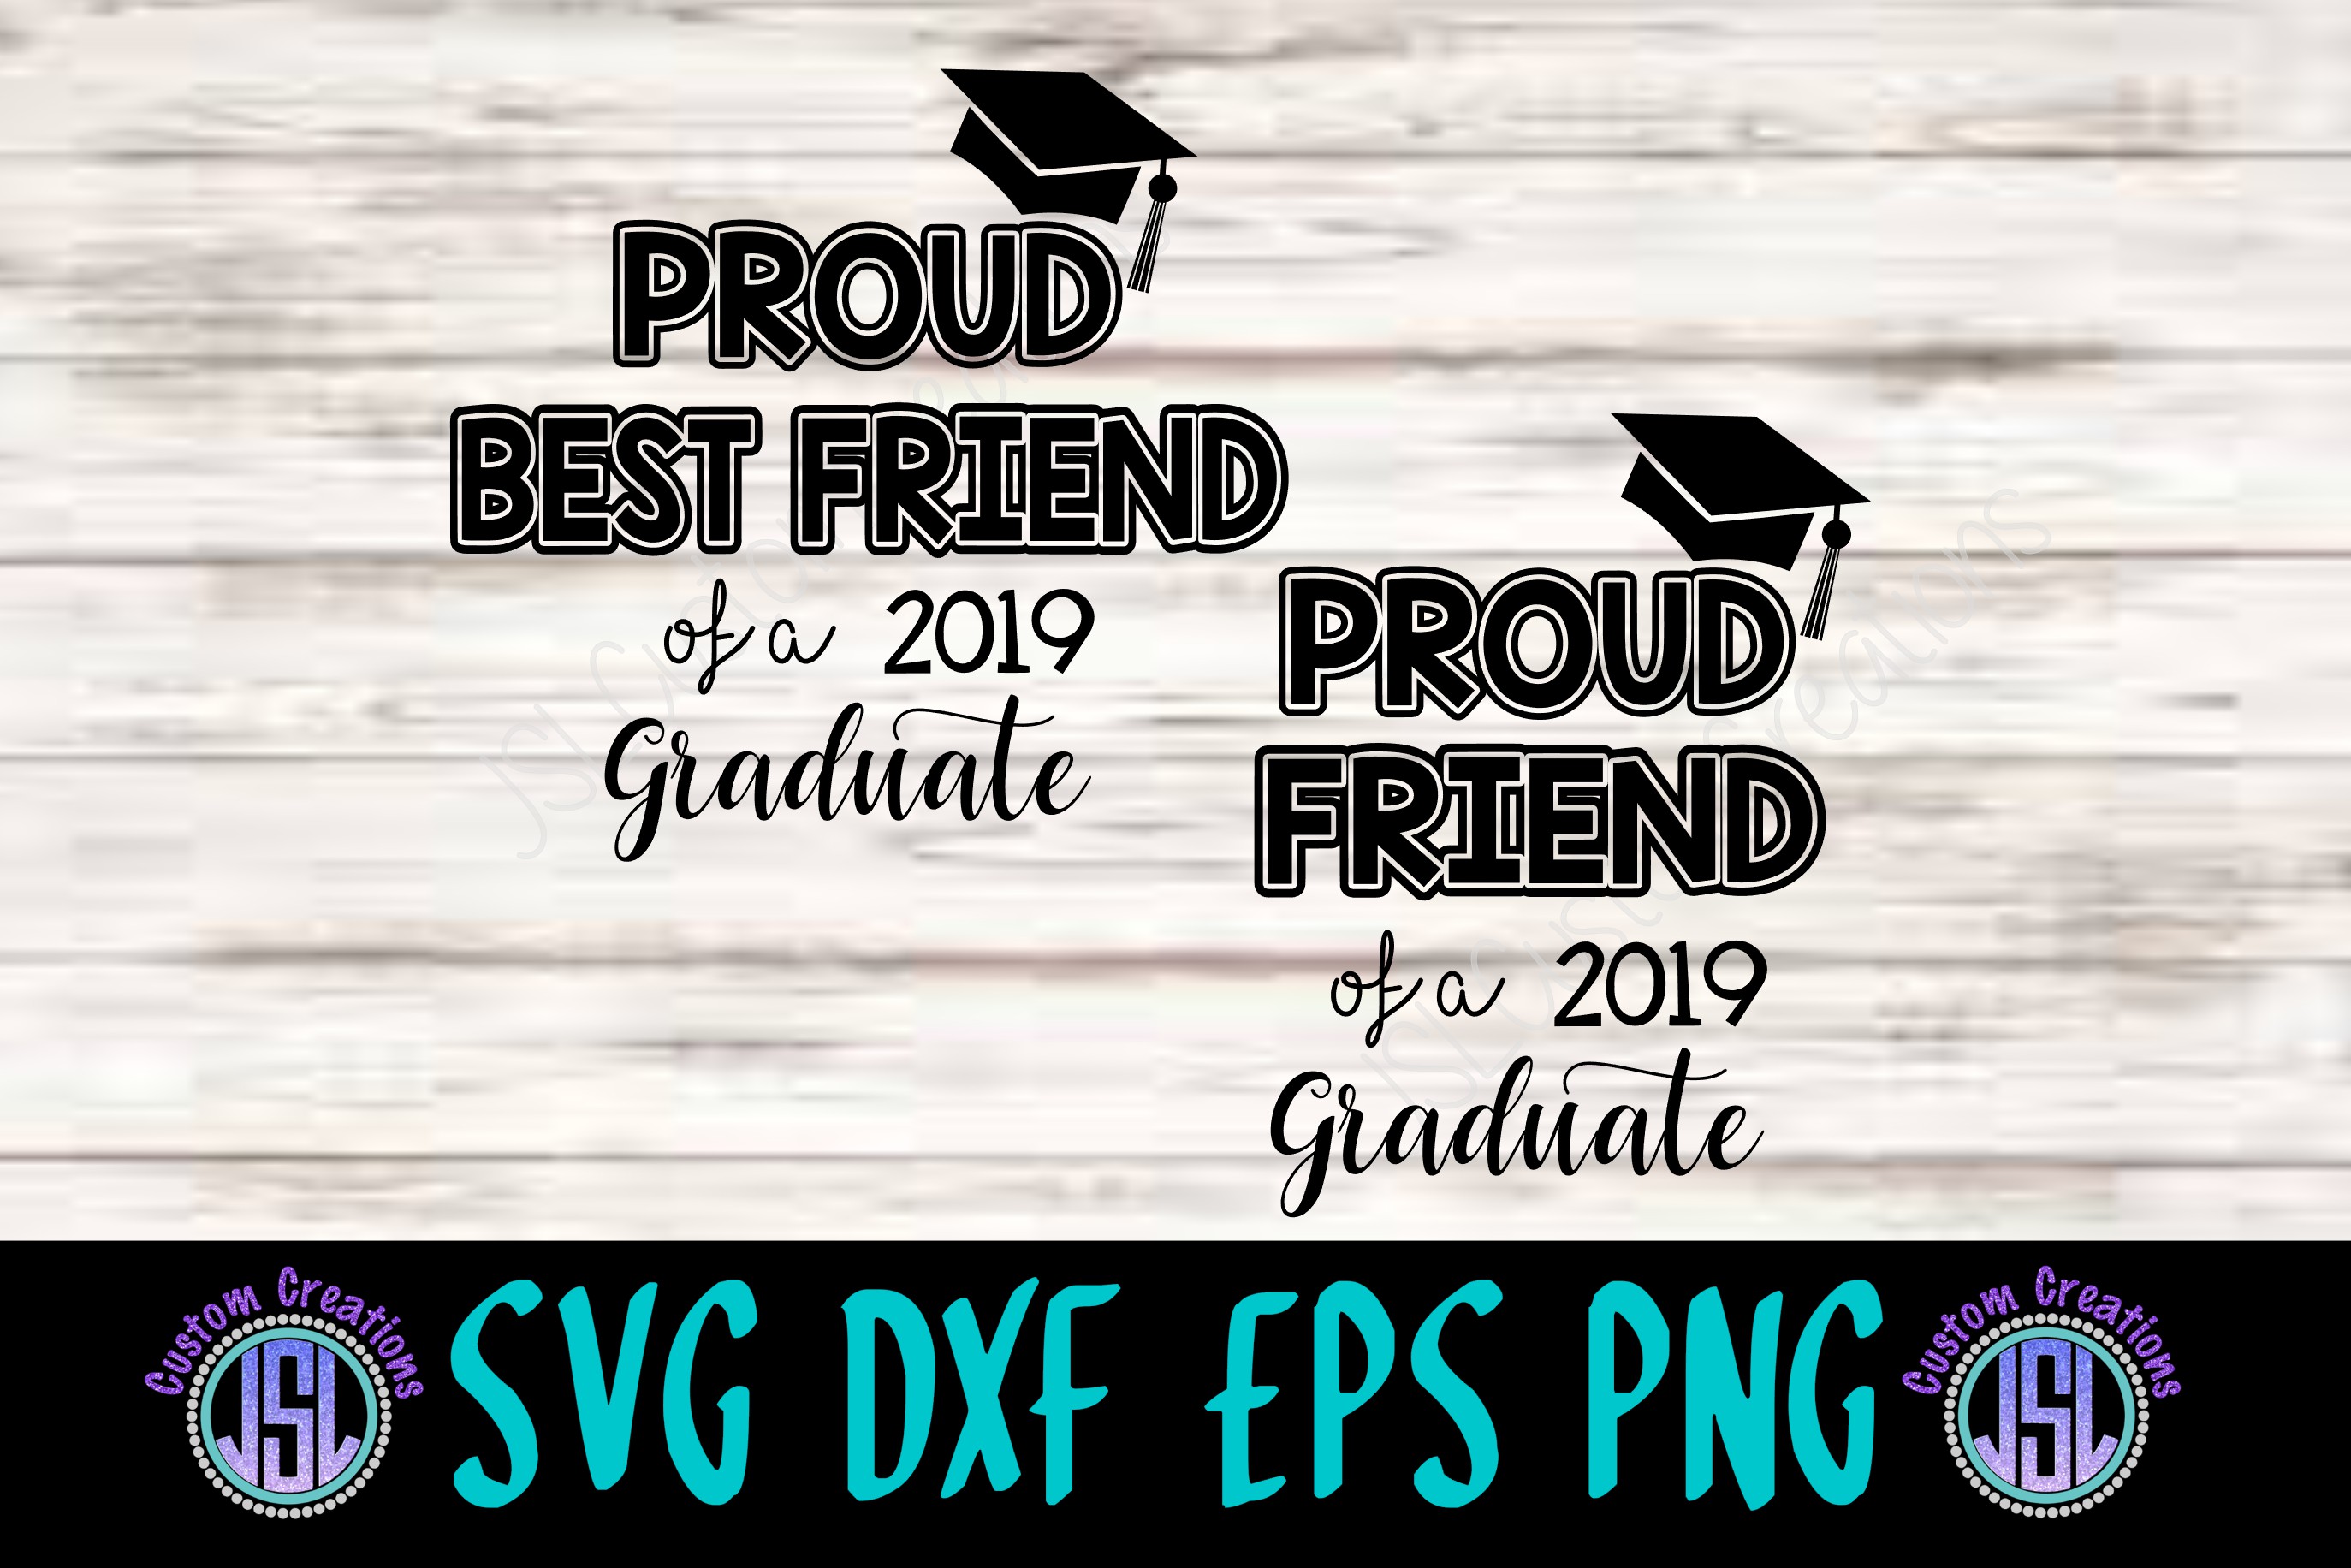 Download Proud Best Friend | Friend 2019 Graduate | SVG DXF EPS PNG ...